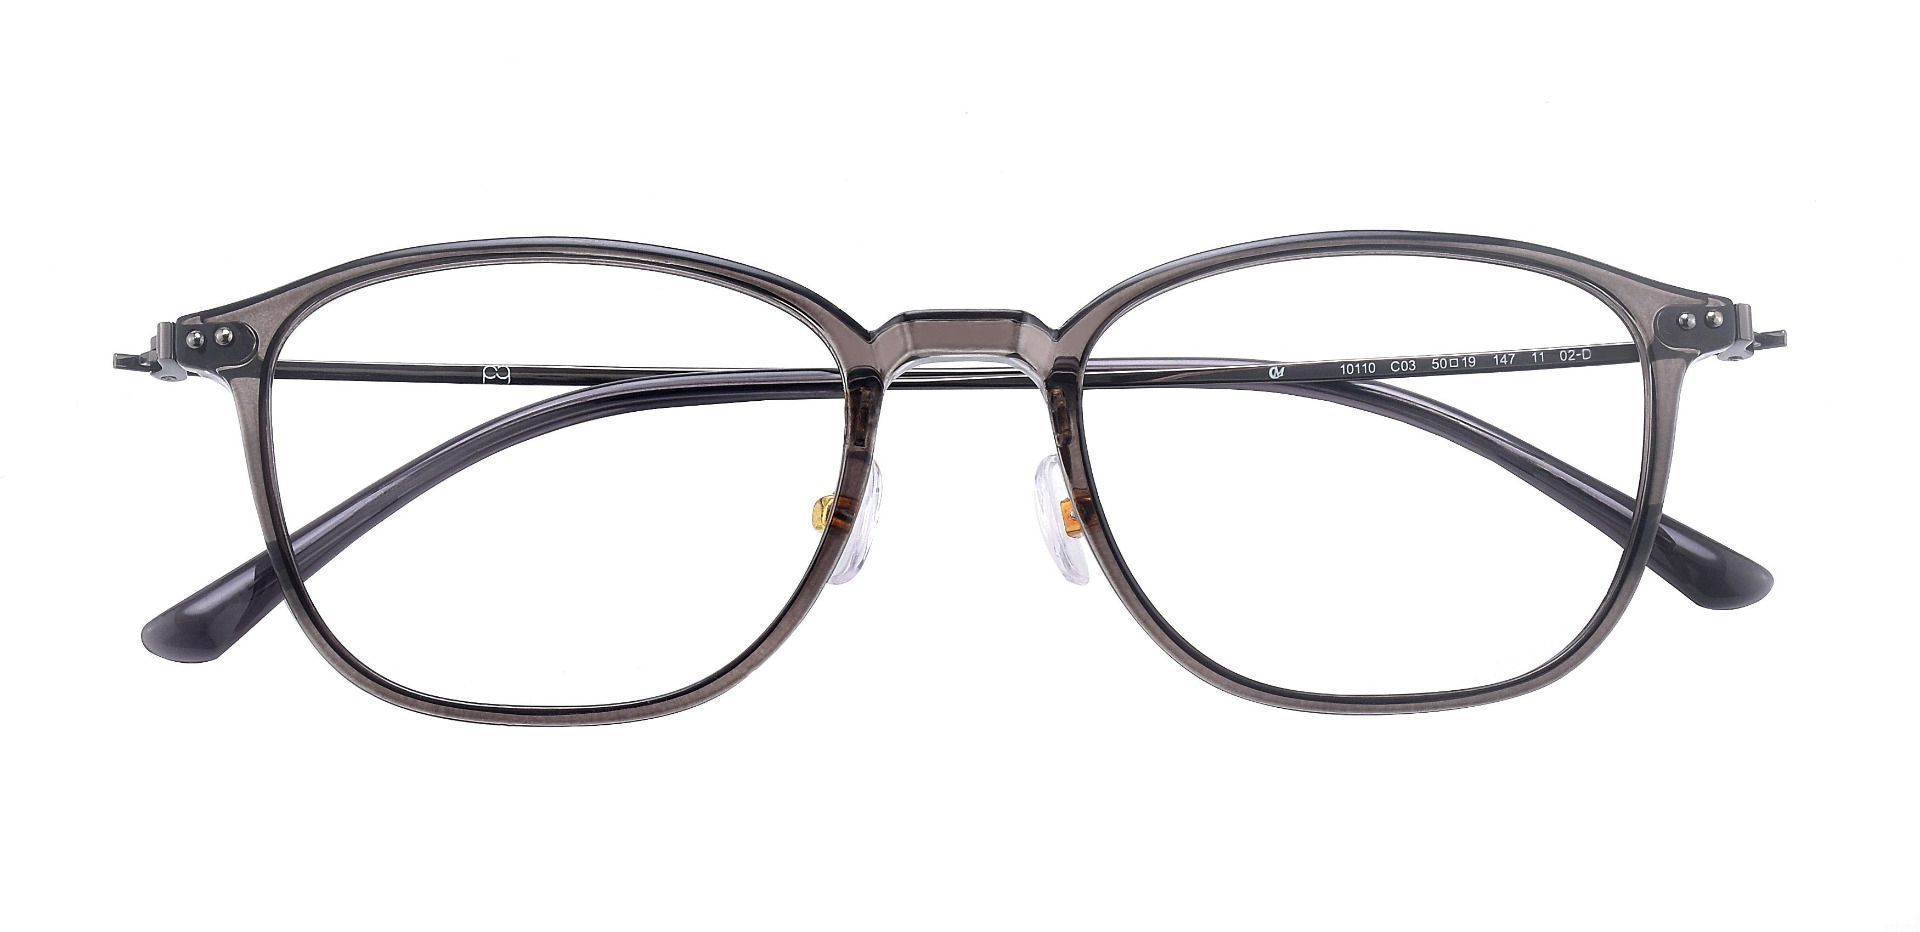 London Oval Eyeglasses Frame - Gray